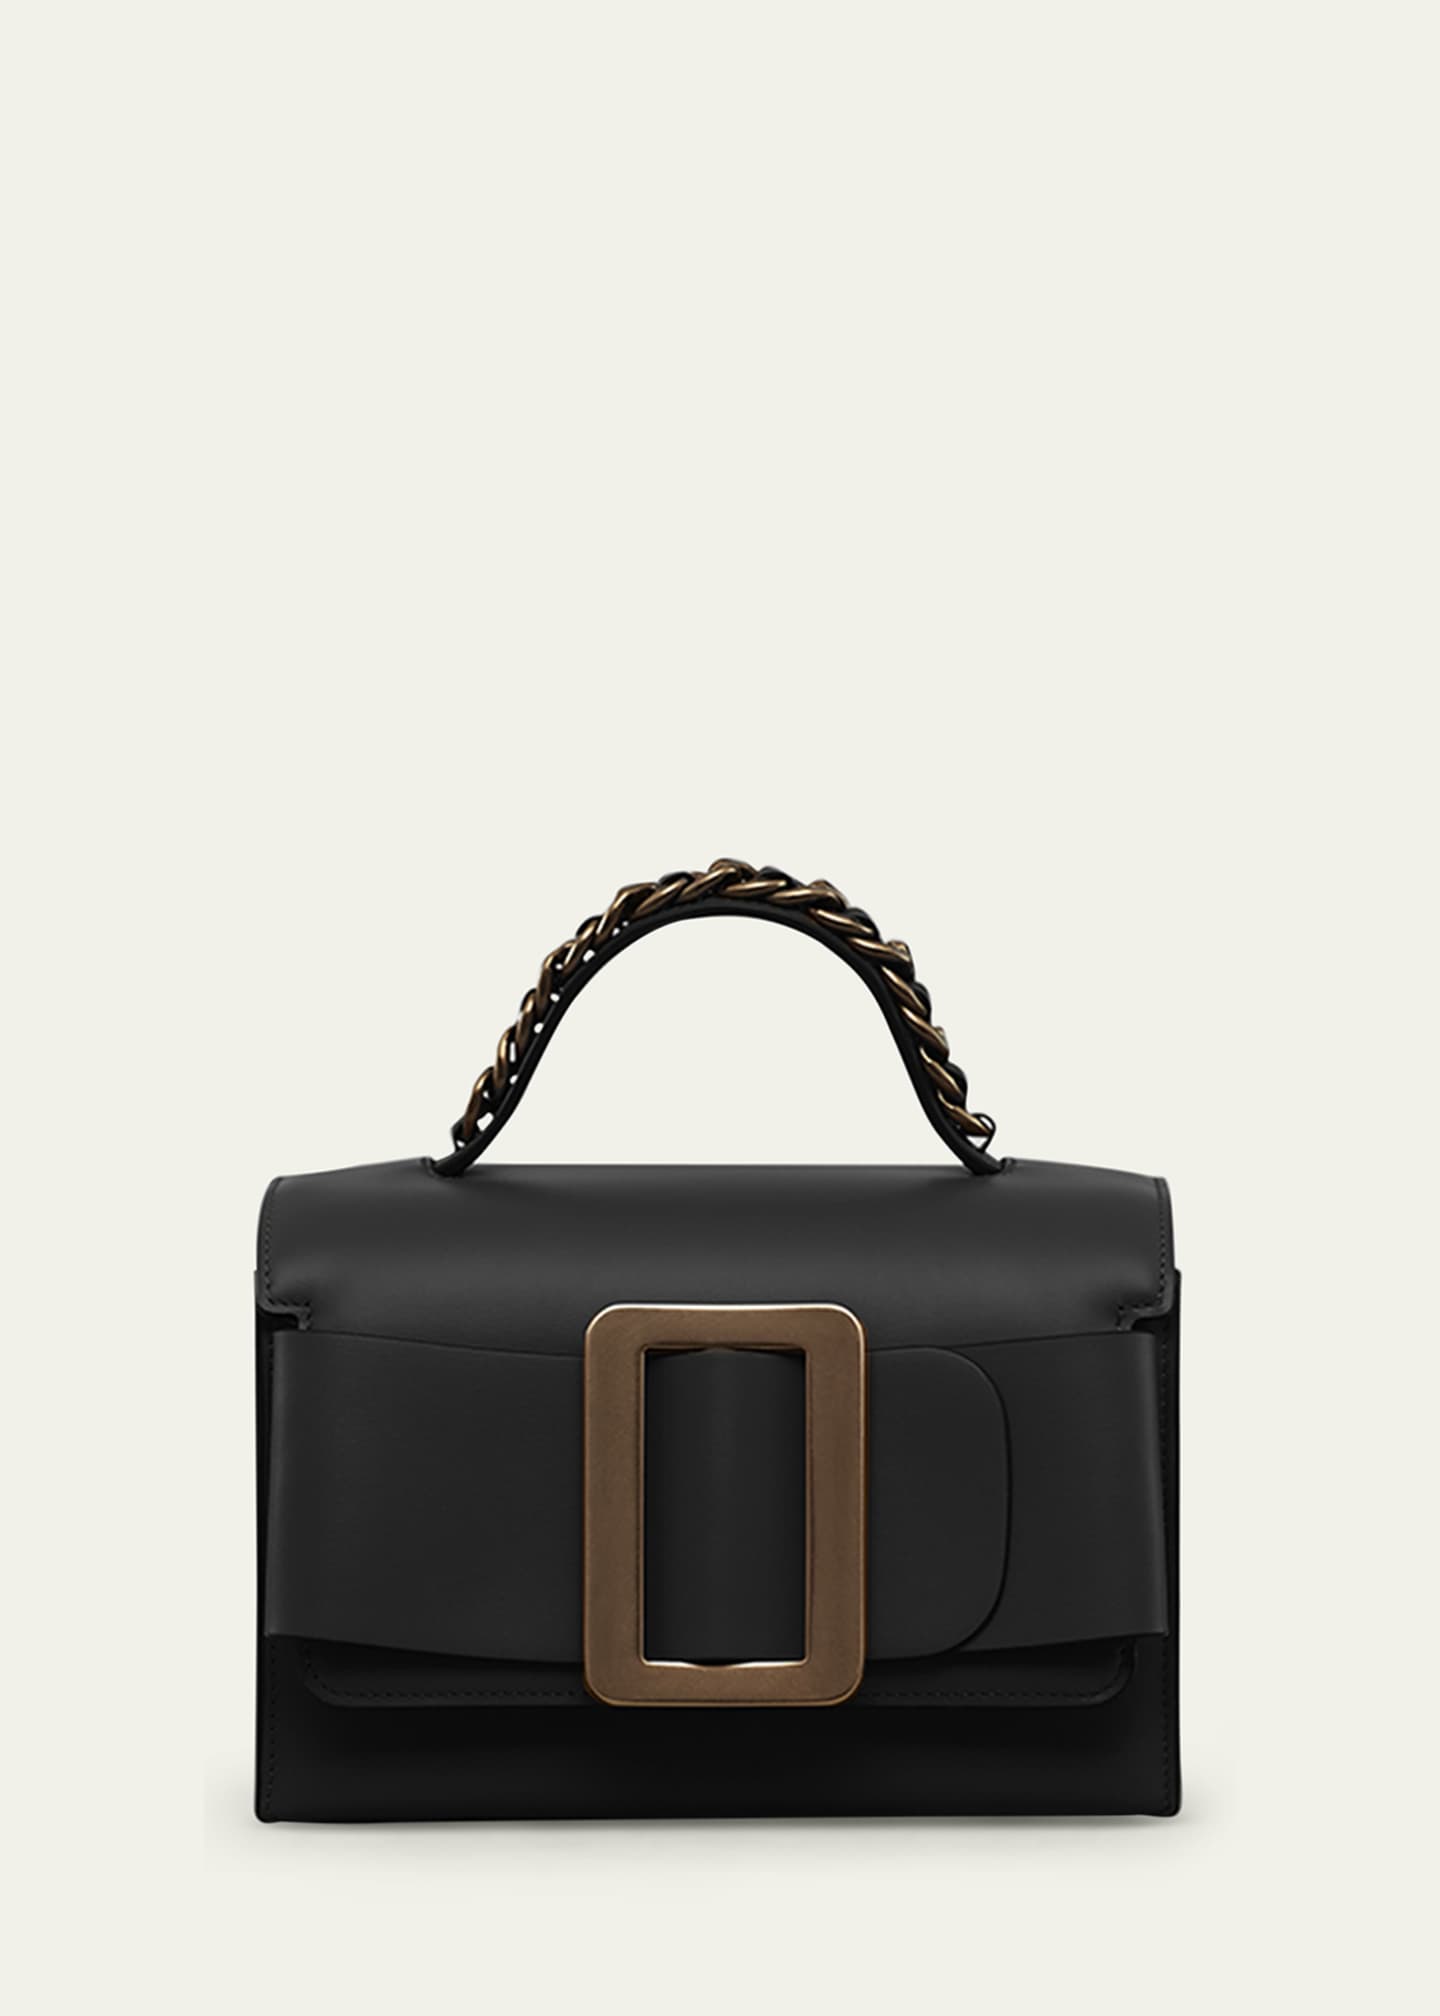 BOYY Handbags at Bergdorf Goodman